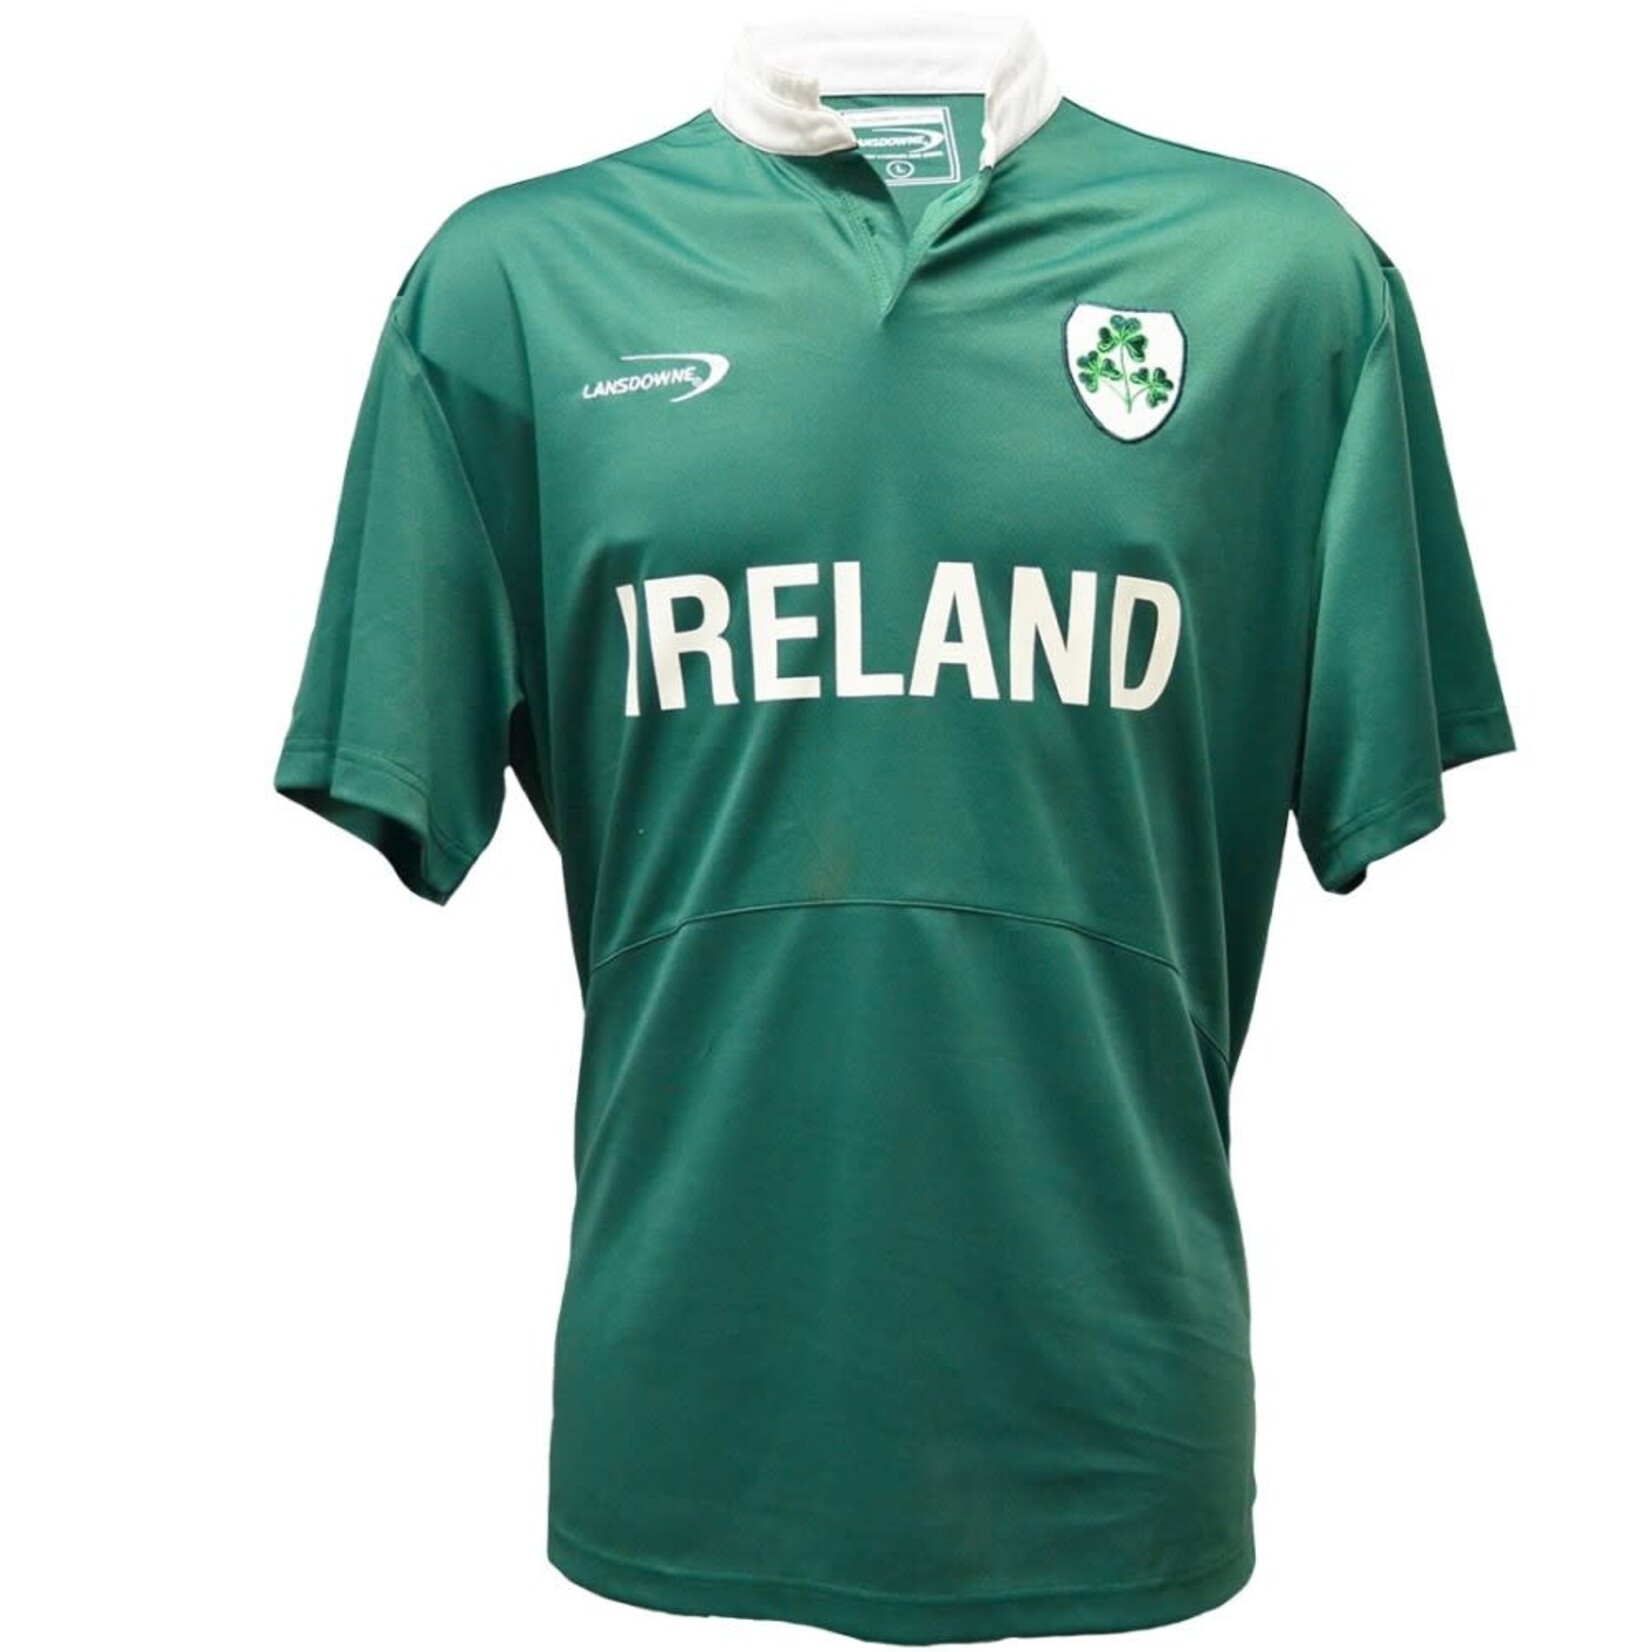 Traditional Craftwear Green 'Ireland' Rugby T-Shirt w/ Shamrock Badge